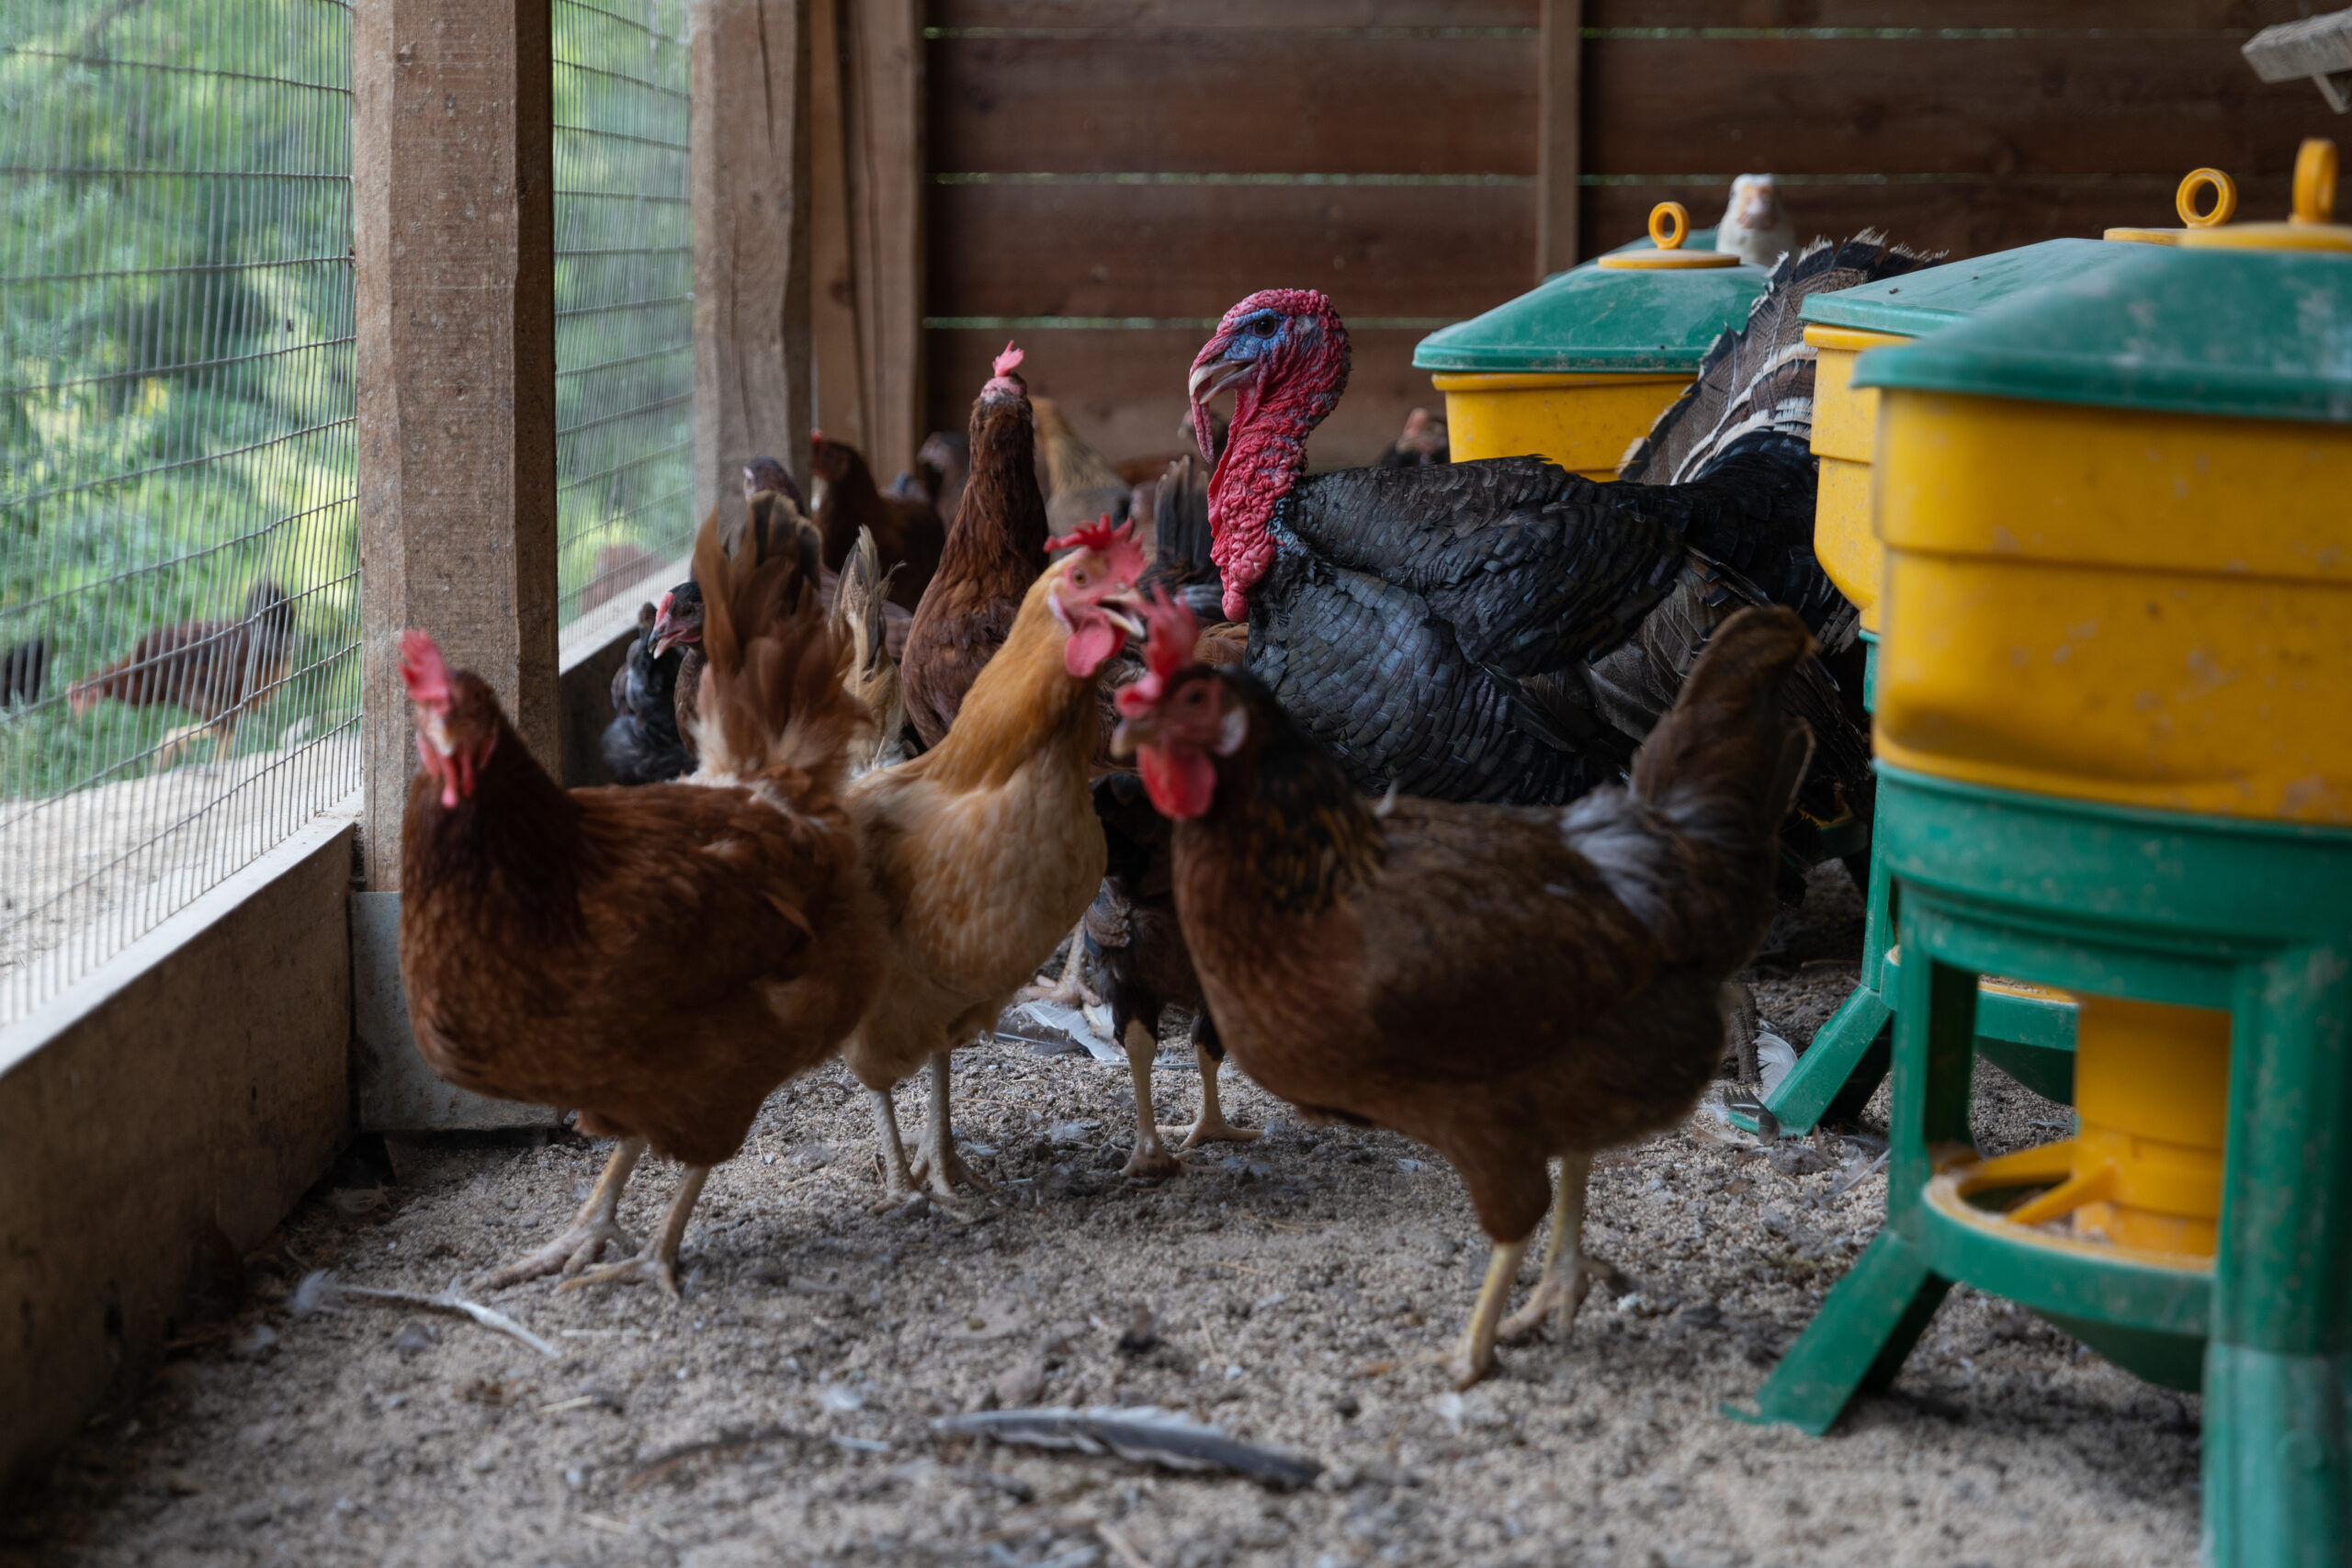 APDAM-Avicoli-pet-therapy-galline-galli-interventi-di-aiuto-con-gli-animali